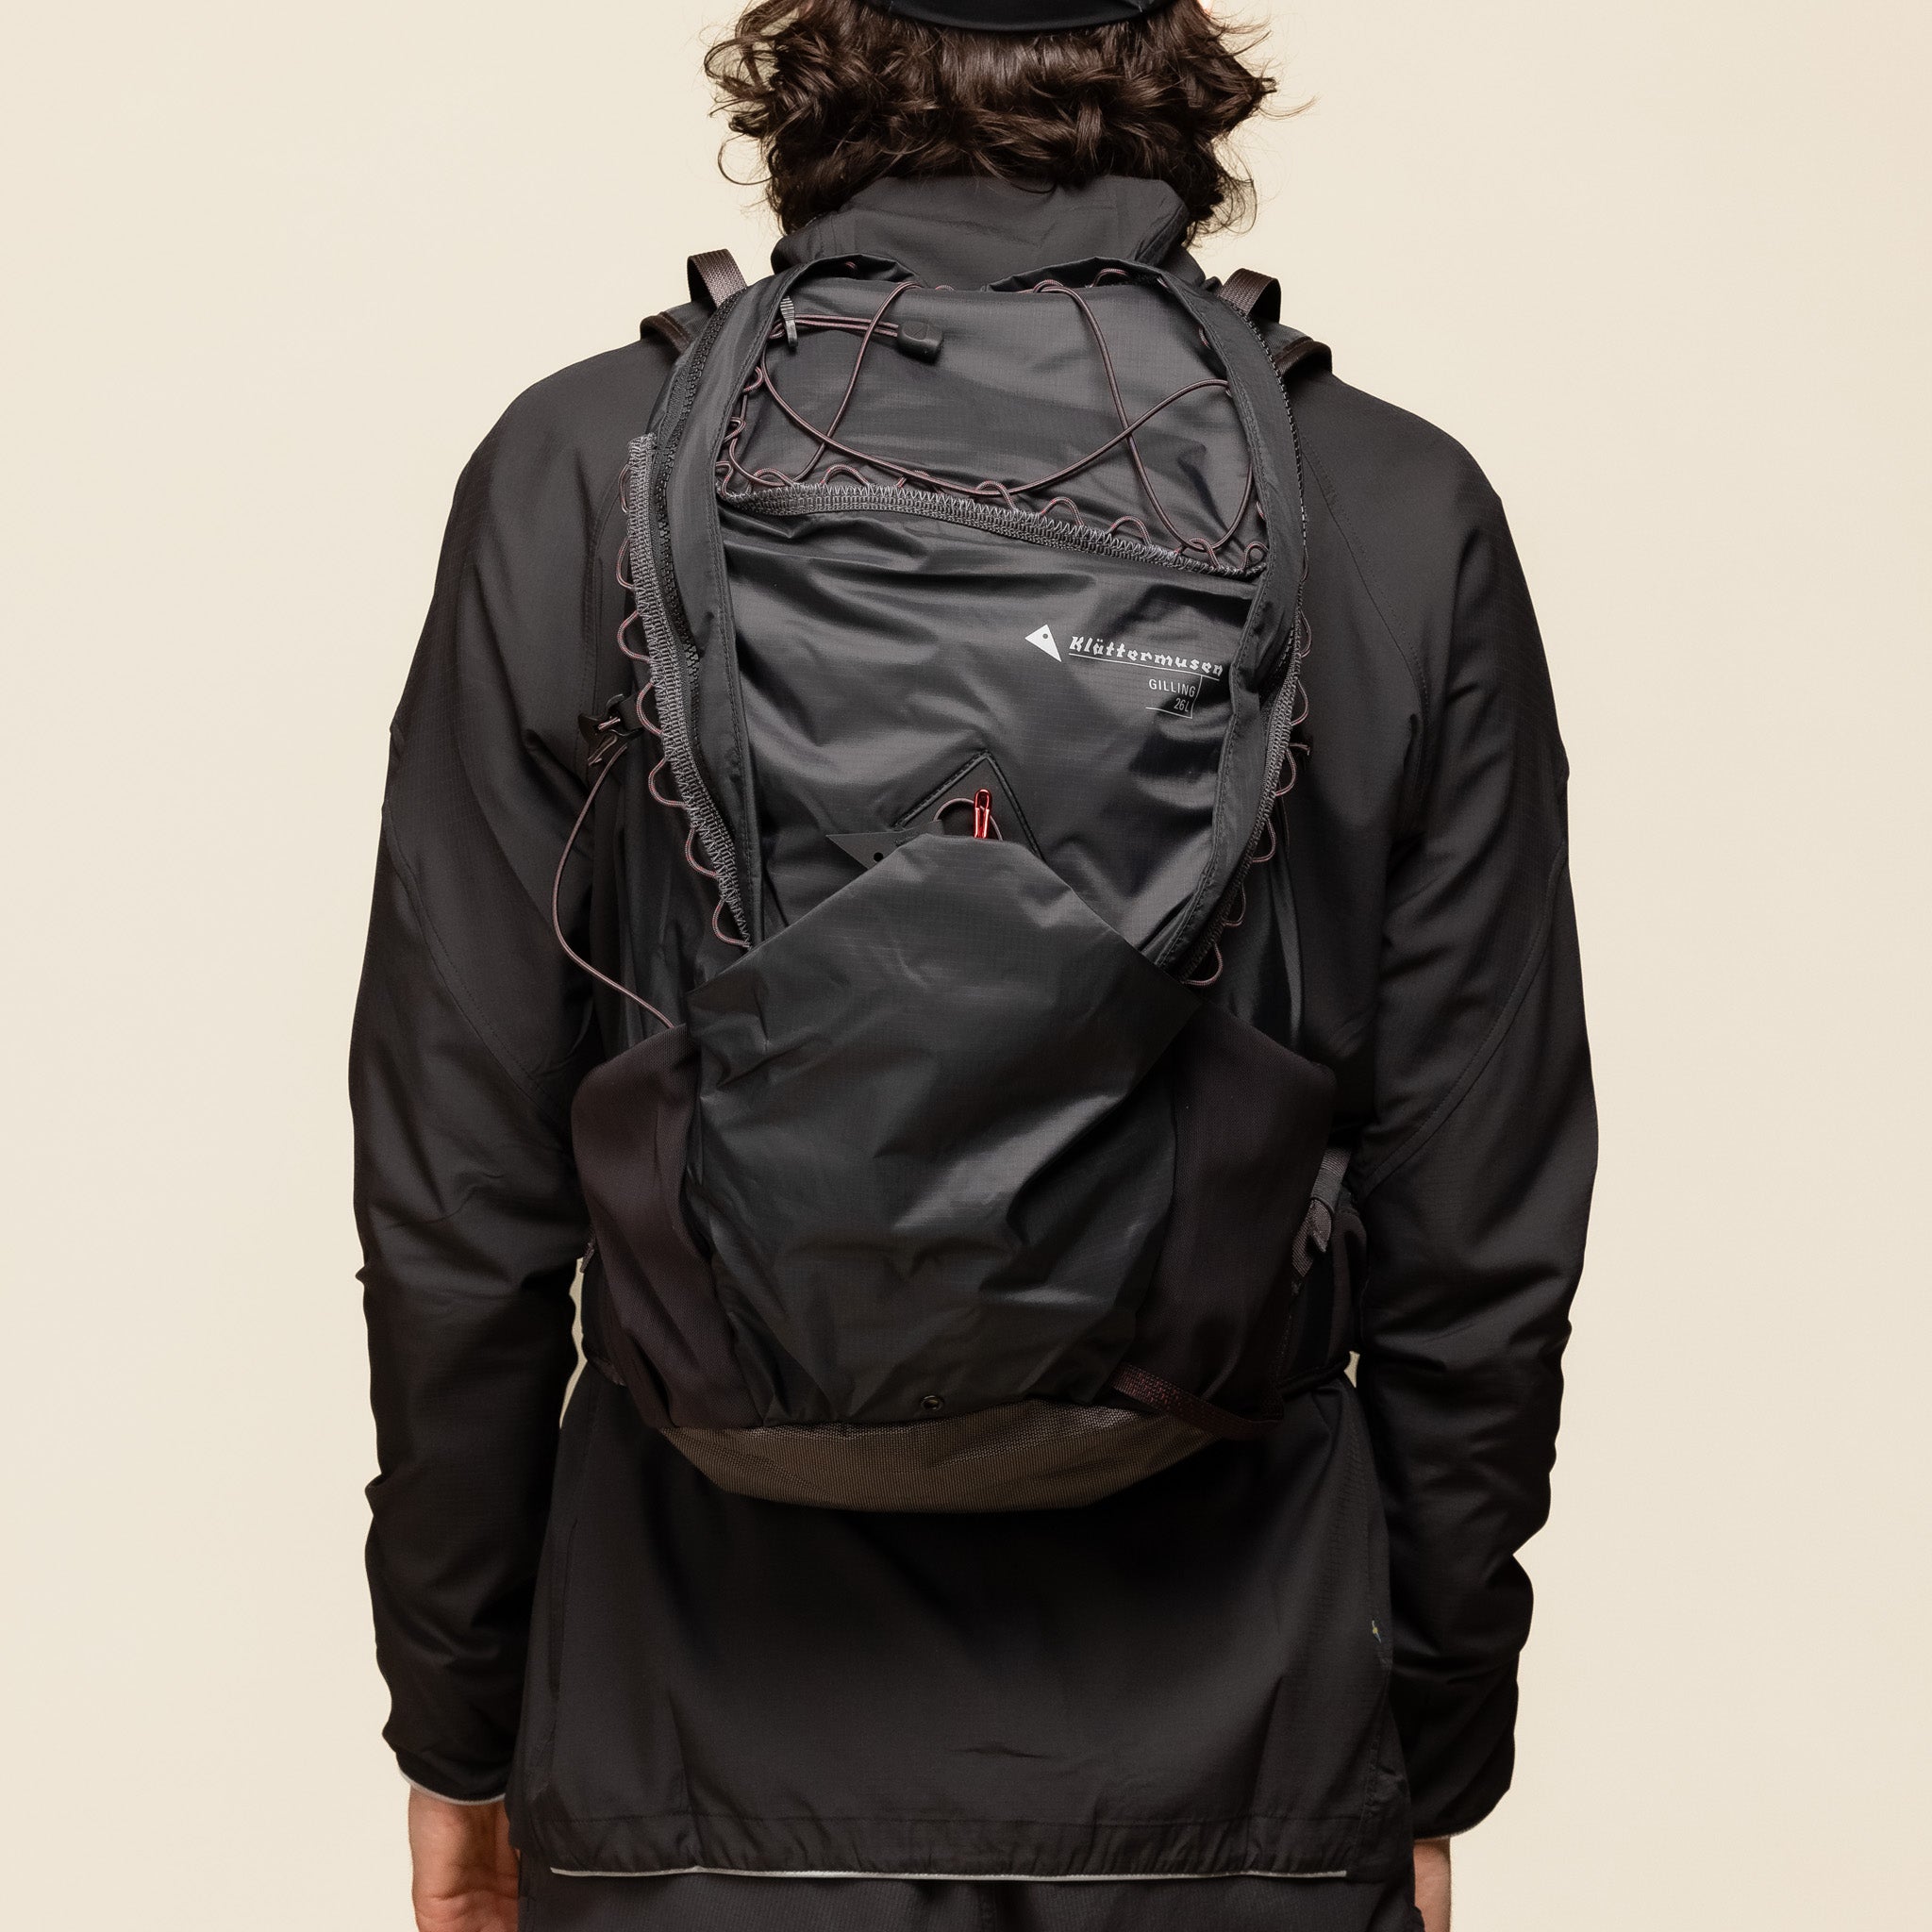 Klättermusen - Gilling Backpack 26L - Raven Black